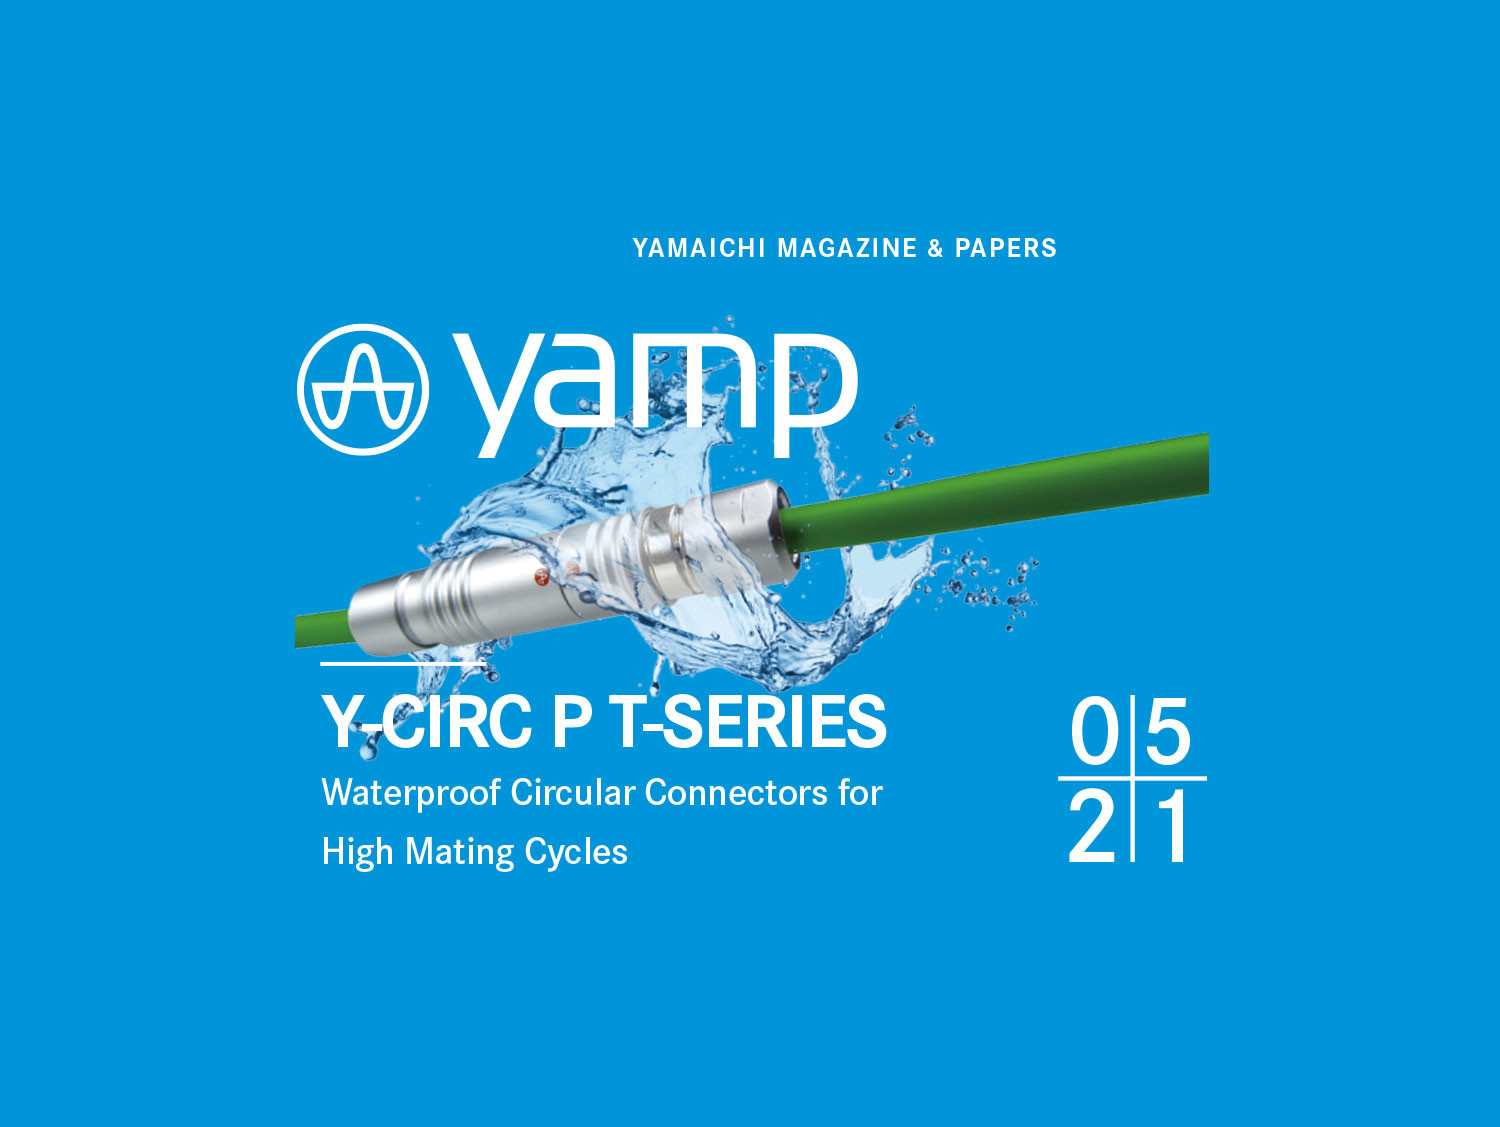 Y-Circ P T-Series